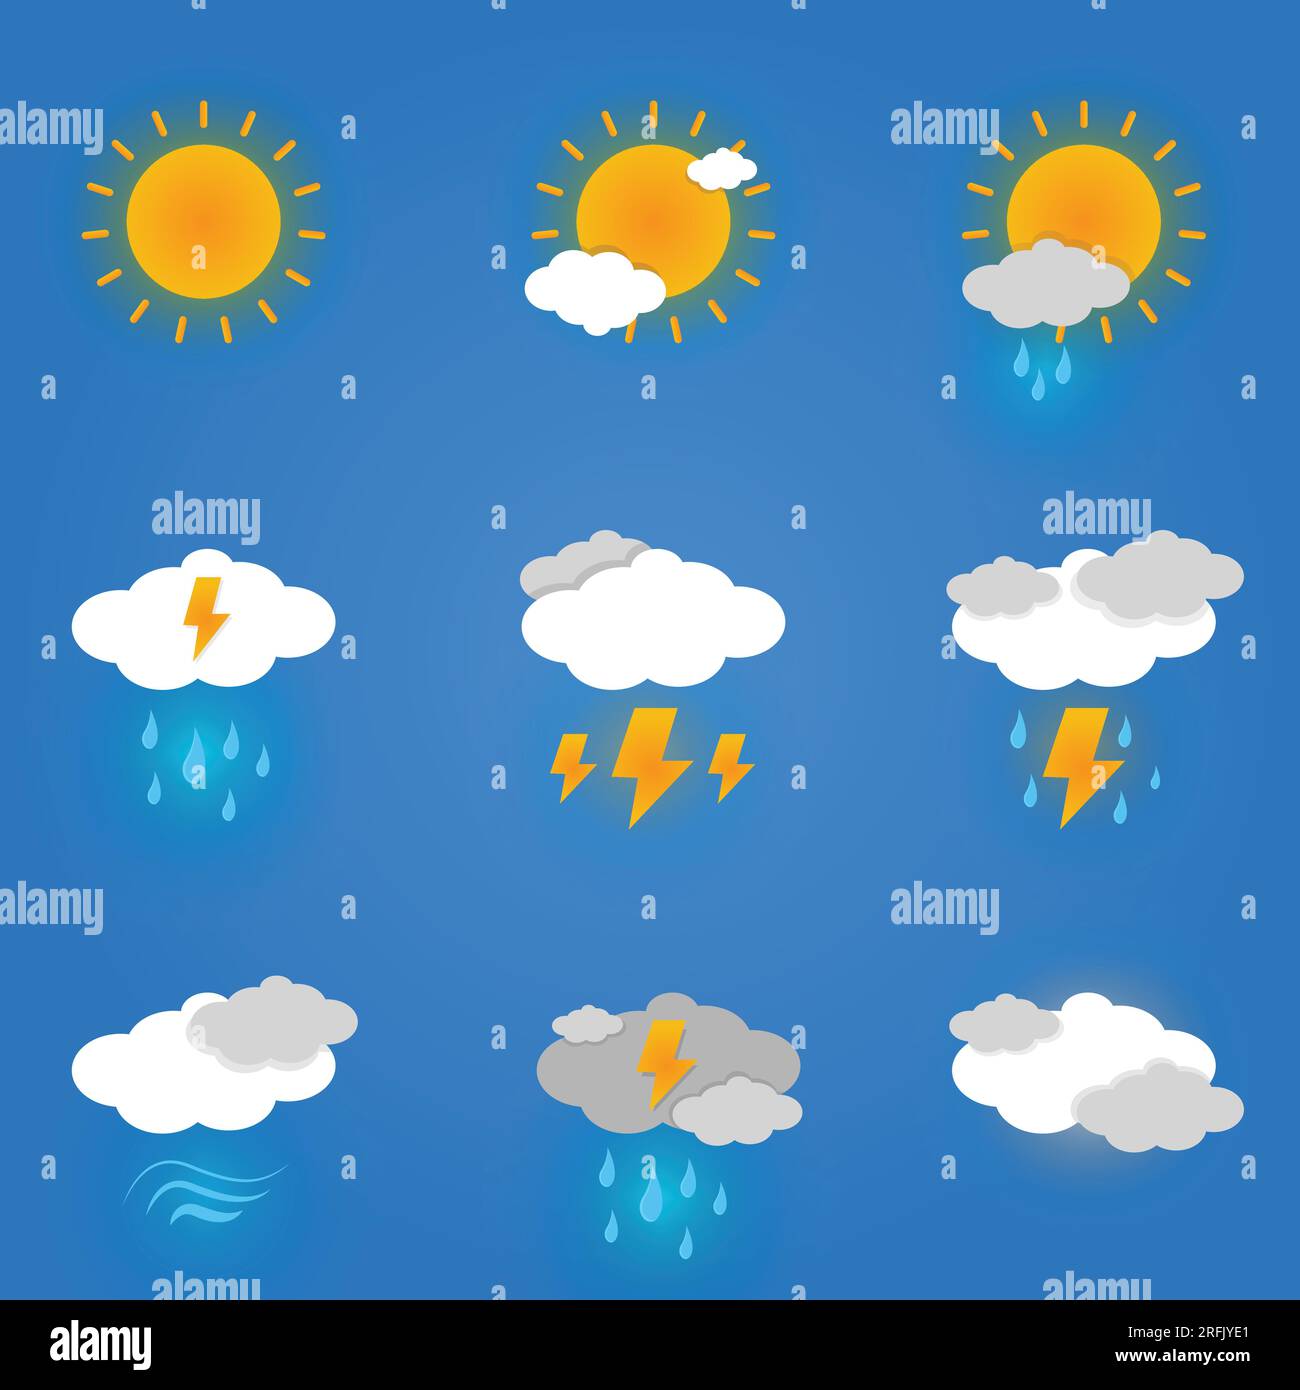 Niedliche Wetter-Cartoon-Style-Ikonen Kollektion Set, aufklebende Wettersymbole isoliert auf blauem, abgestuftem Hintergrund Stock Vektor